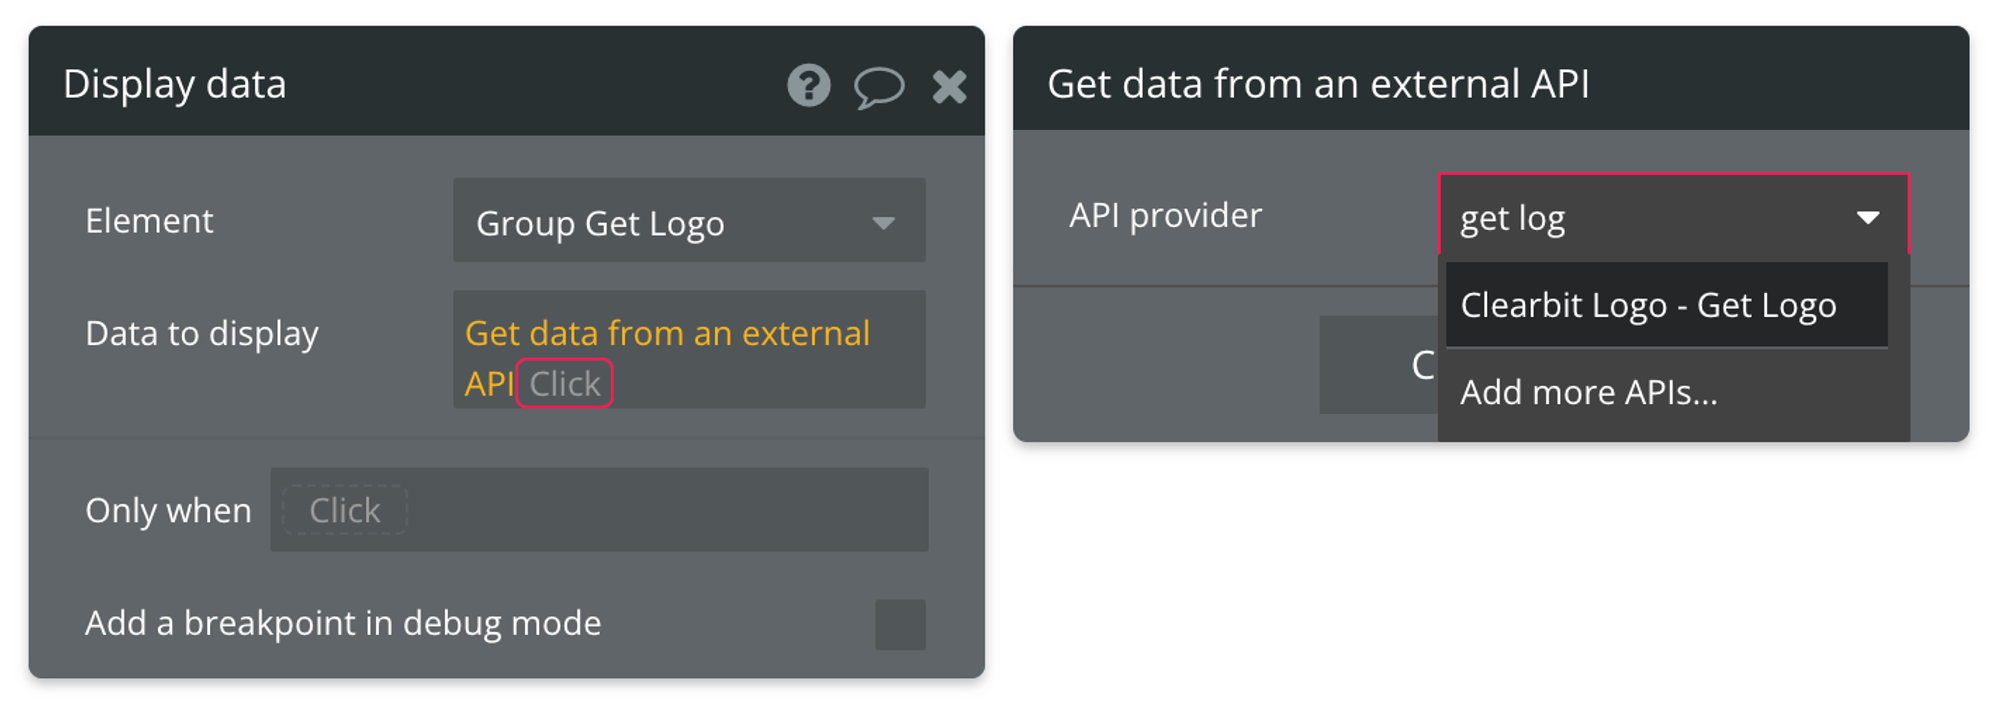 Get data from an external API